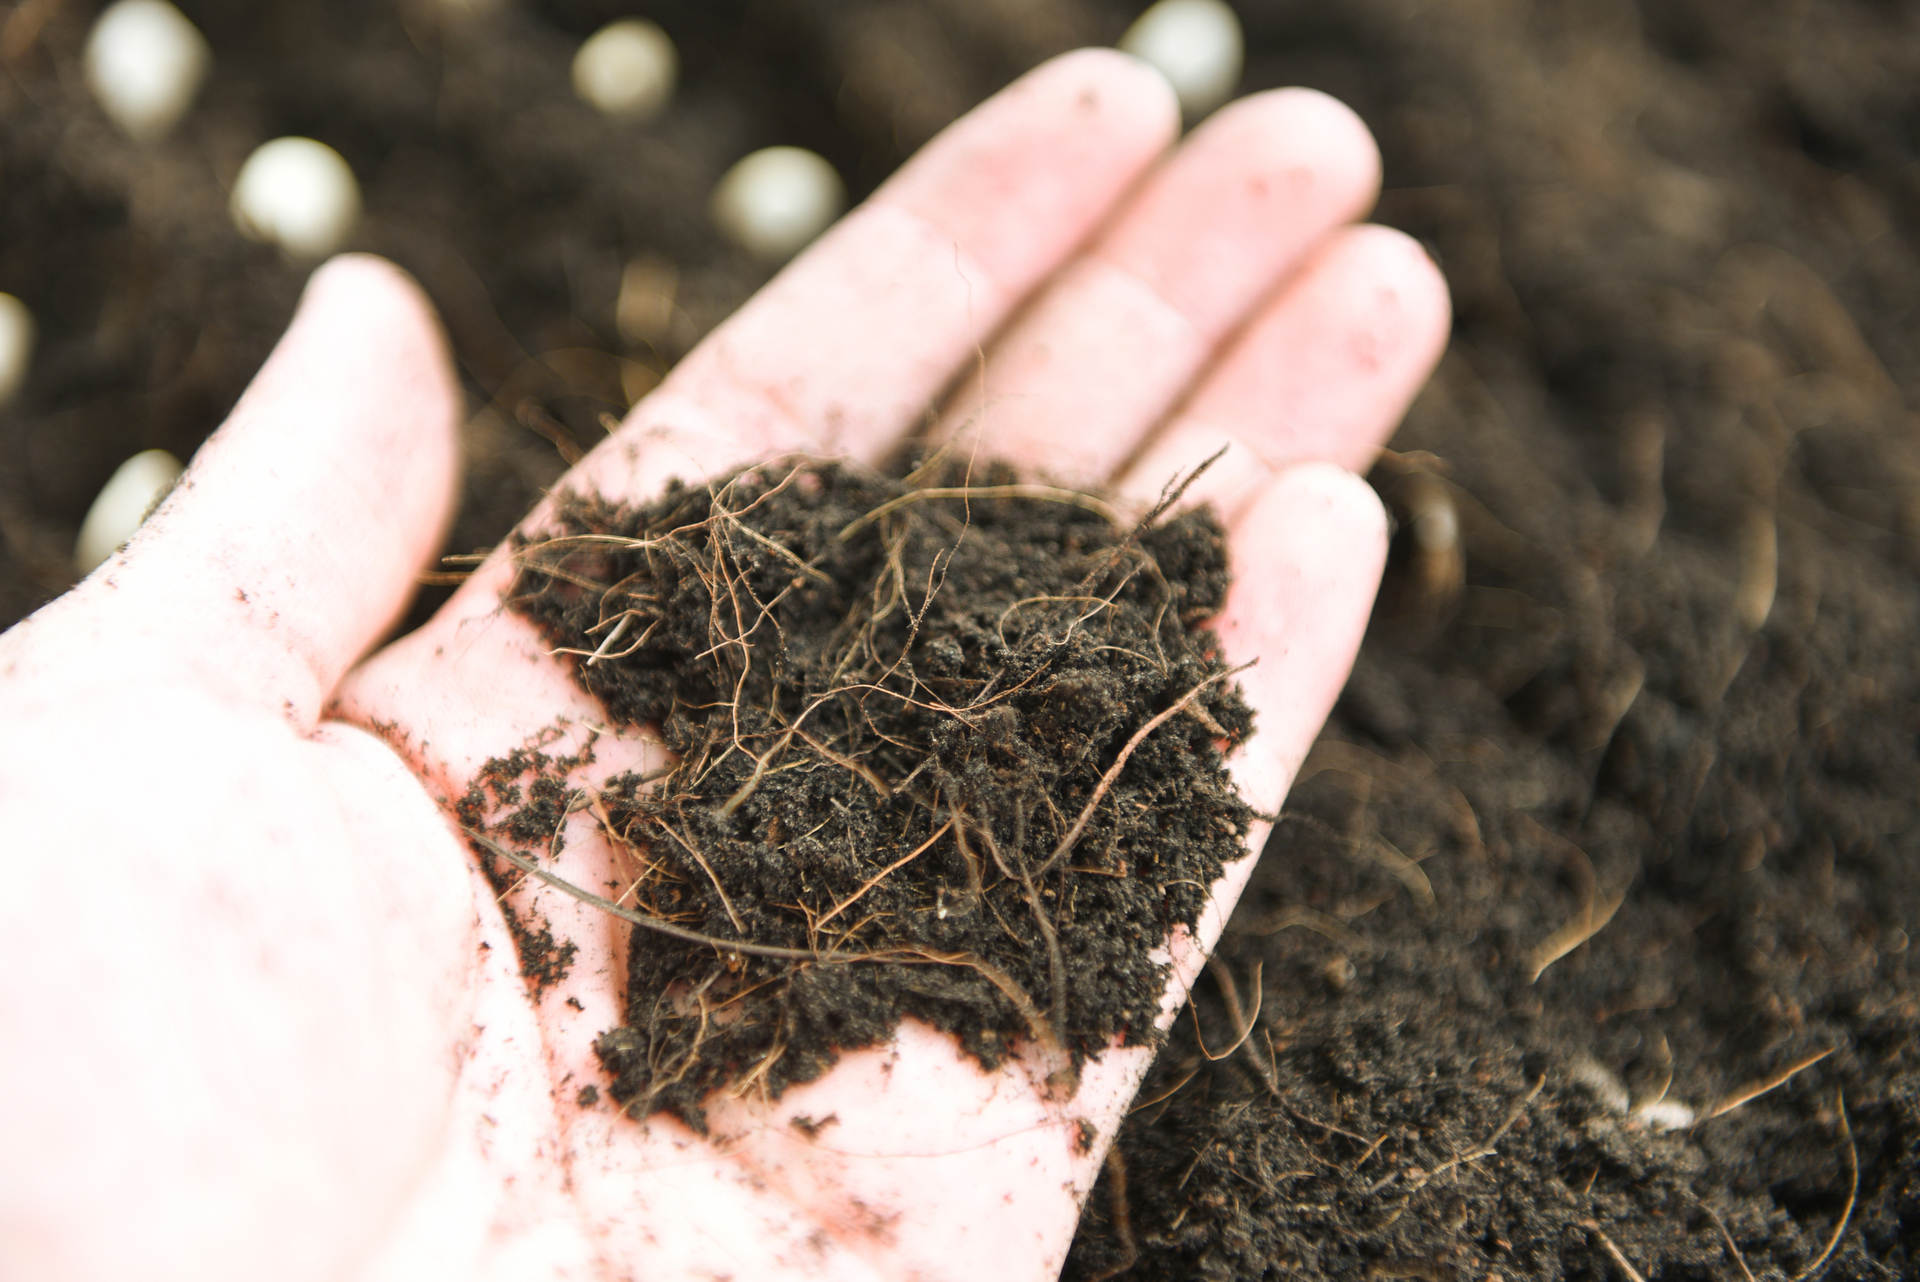 Na tym ujmującym obrazku widzimy dłoń, która trzyma garść bogatego kompostu. Widać różnorodne organiczne materiały, takie jak resztki roślinne, liście i skorupki jaj, tworzące teksturę i kształt tego odżywczego medium. Kompost jest pełen składników odżywczych i mikroorganizmów, które wspomagają zdrowy wzrost roślin i zapewniają im optymalne warunki do rozwoju. Ten obrazek symbolizuje znaczenie kompostu jako naturalnego źródła odżywki dla roślin, które pomaga w tworzeniu zdrowego i bujnego ogrodu